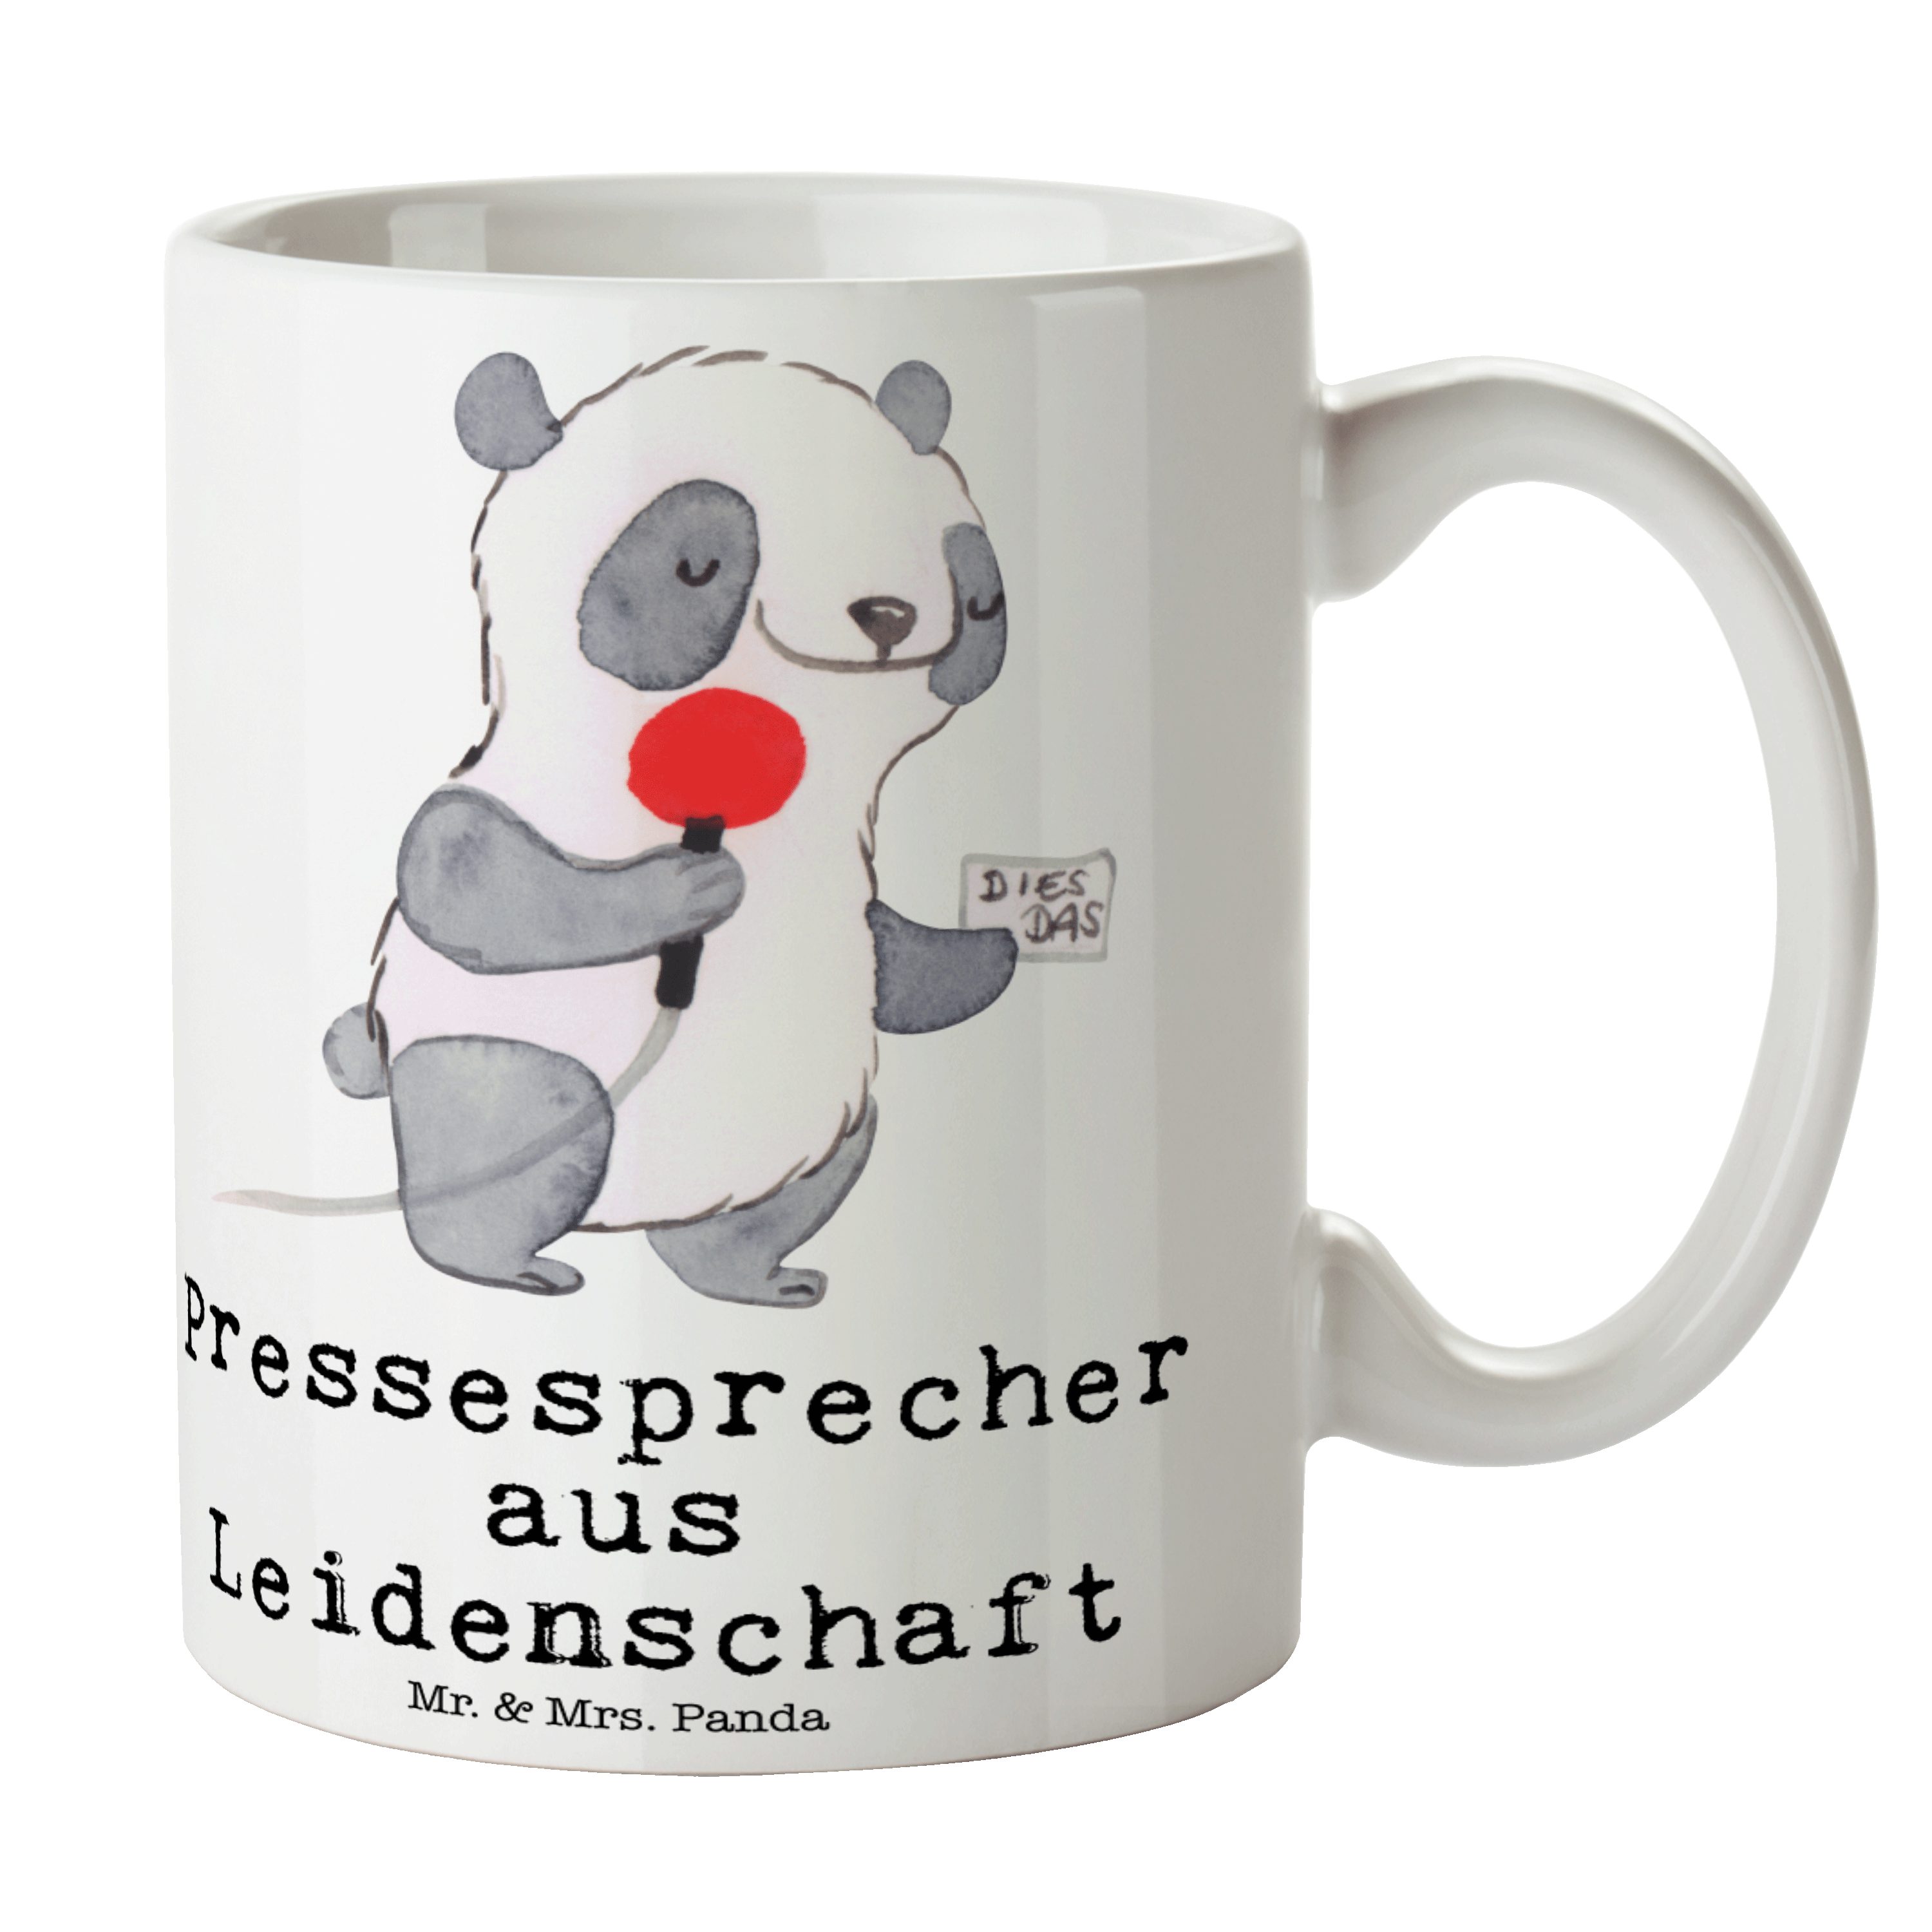 Jubiläum, Geschenk, & - Mr. K, aus Panda - Leidenschaft Mrs. Weiß Keramik Pressesprecher Tasse Tasse,